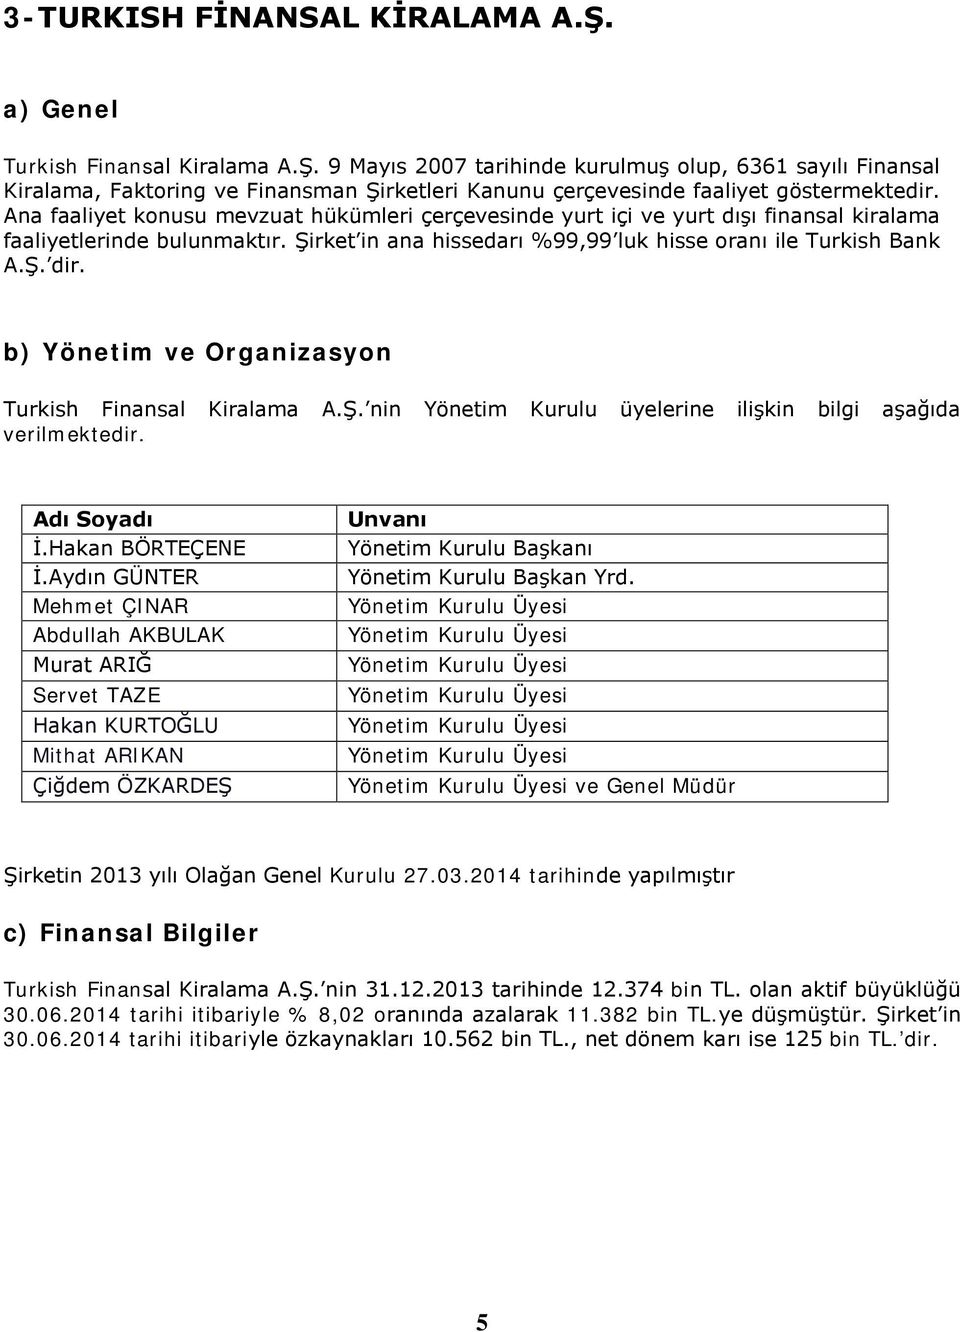 b) Yönetim ve Organizasyon Turkish Finansal Kiralama A.Ş. nin Yönetim Kurulu üyelerine ilişkin bilgi aşağıda verilmektedir. Adı Soyadı İ.Hakan BÖRTEÇENE İ.